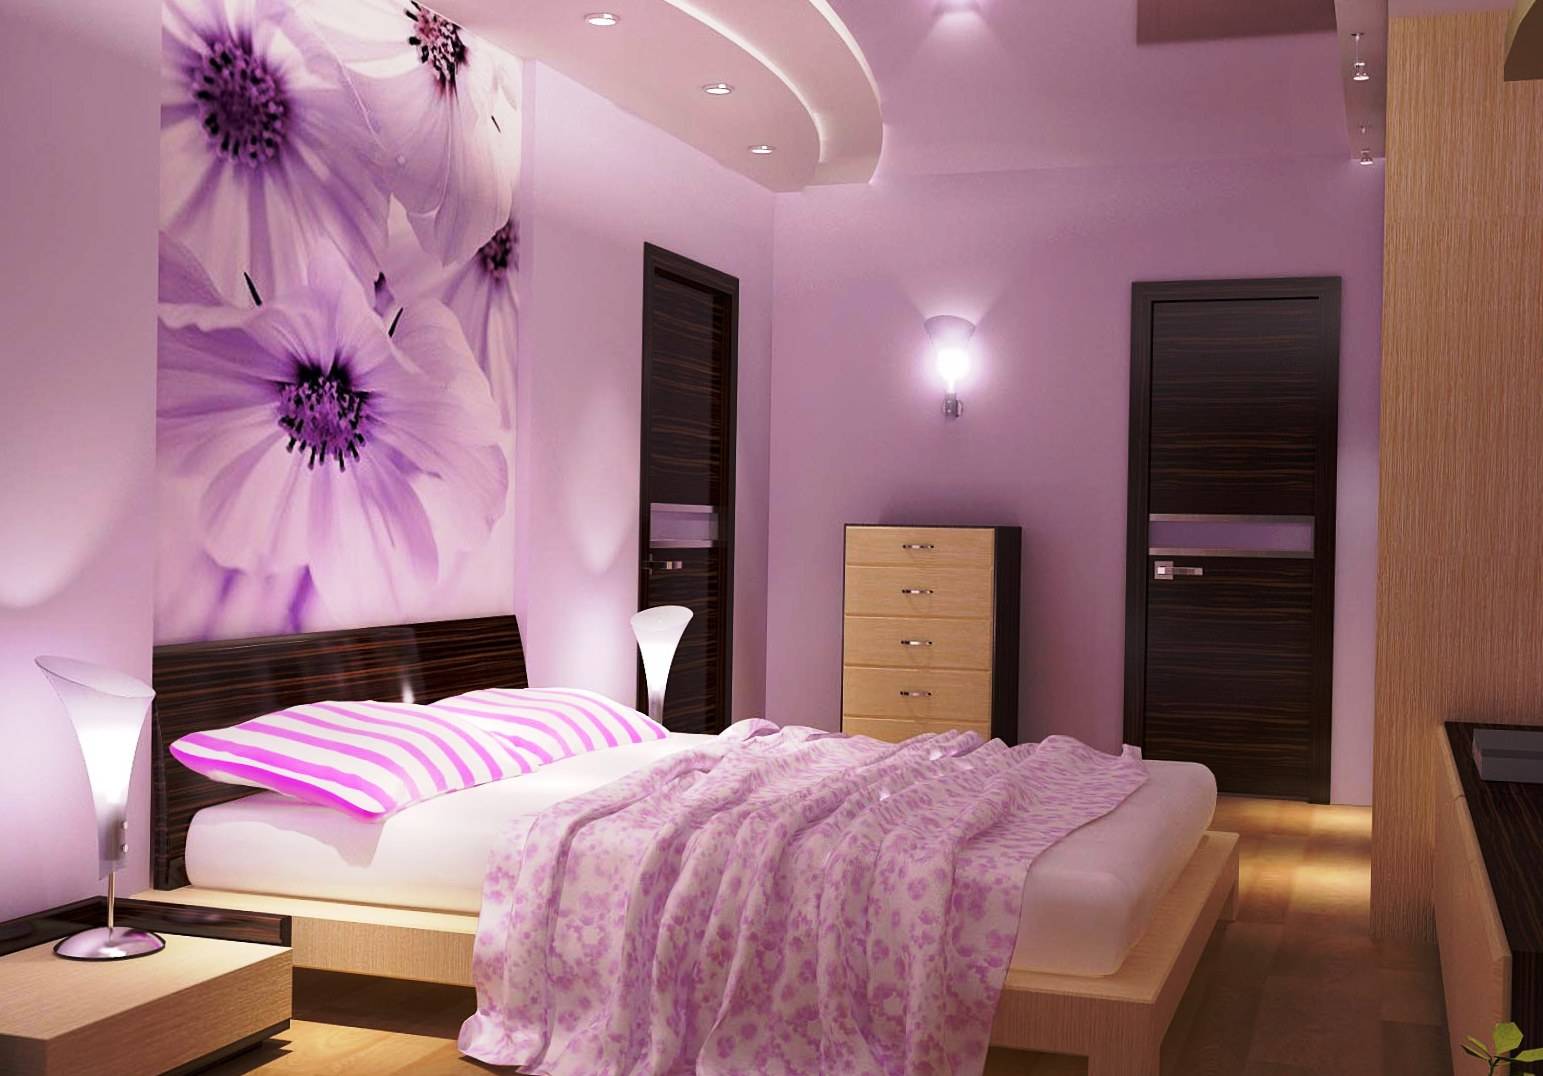 Как происходит ремонт спальни дизайн фото реальные примеры